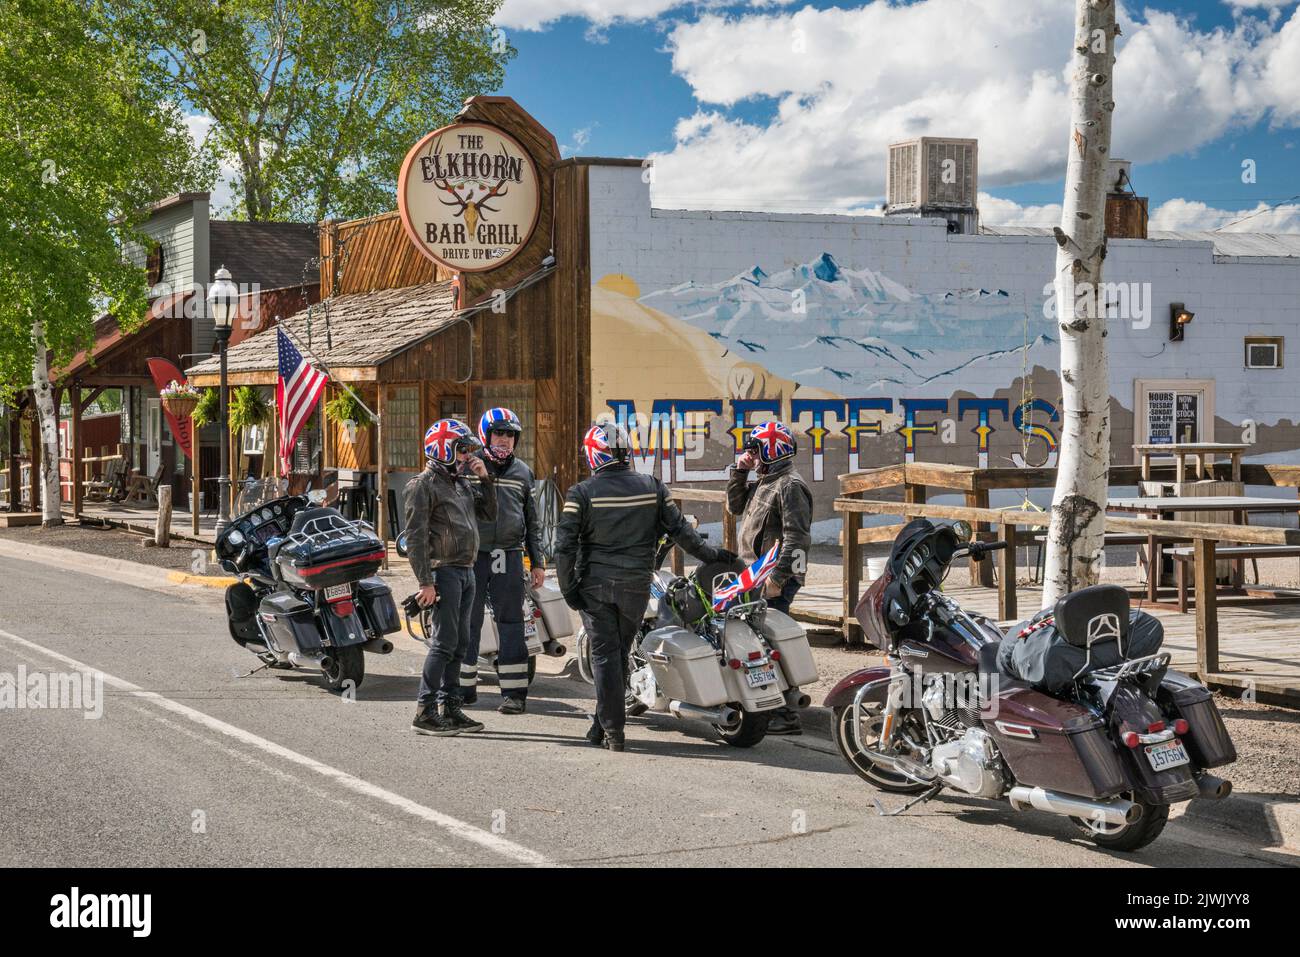 British bikers on main street in Meeteetse, Wyoming, USA Stock Photo